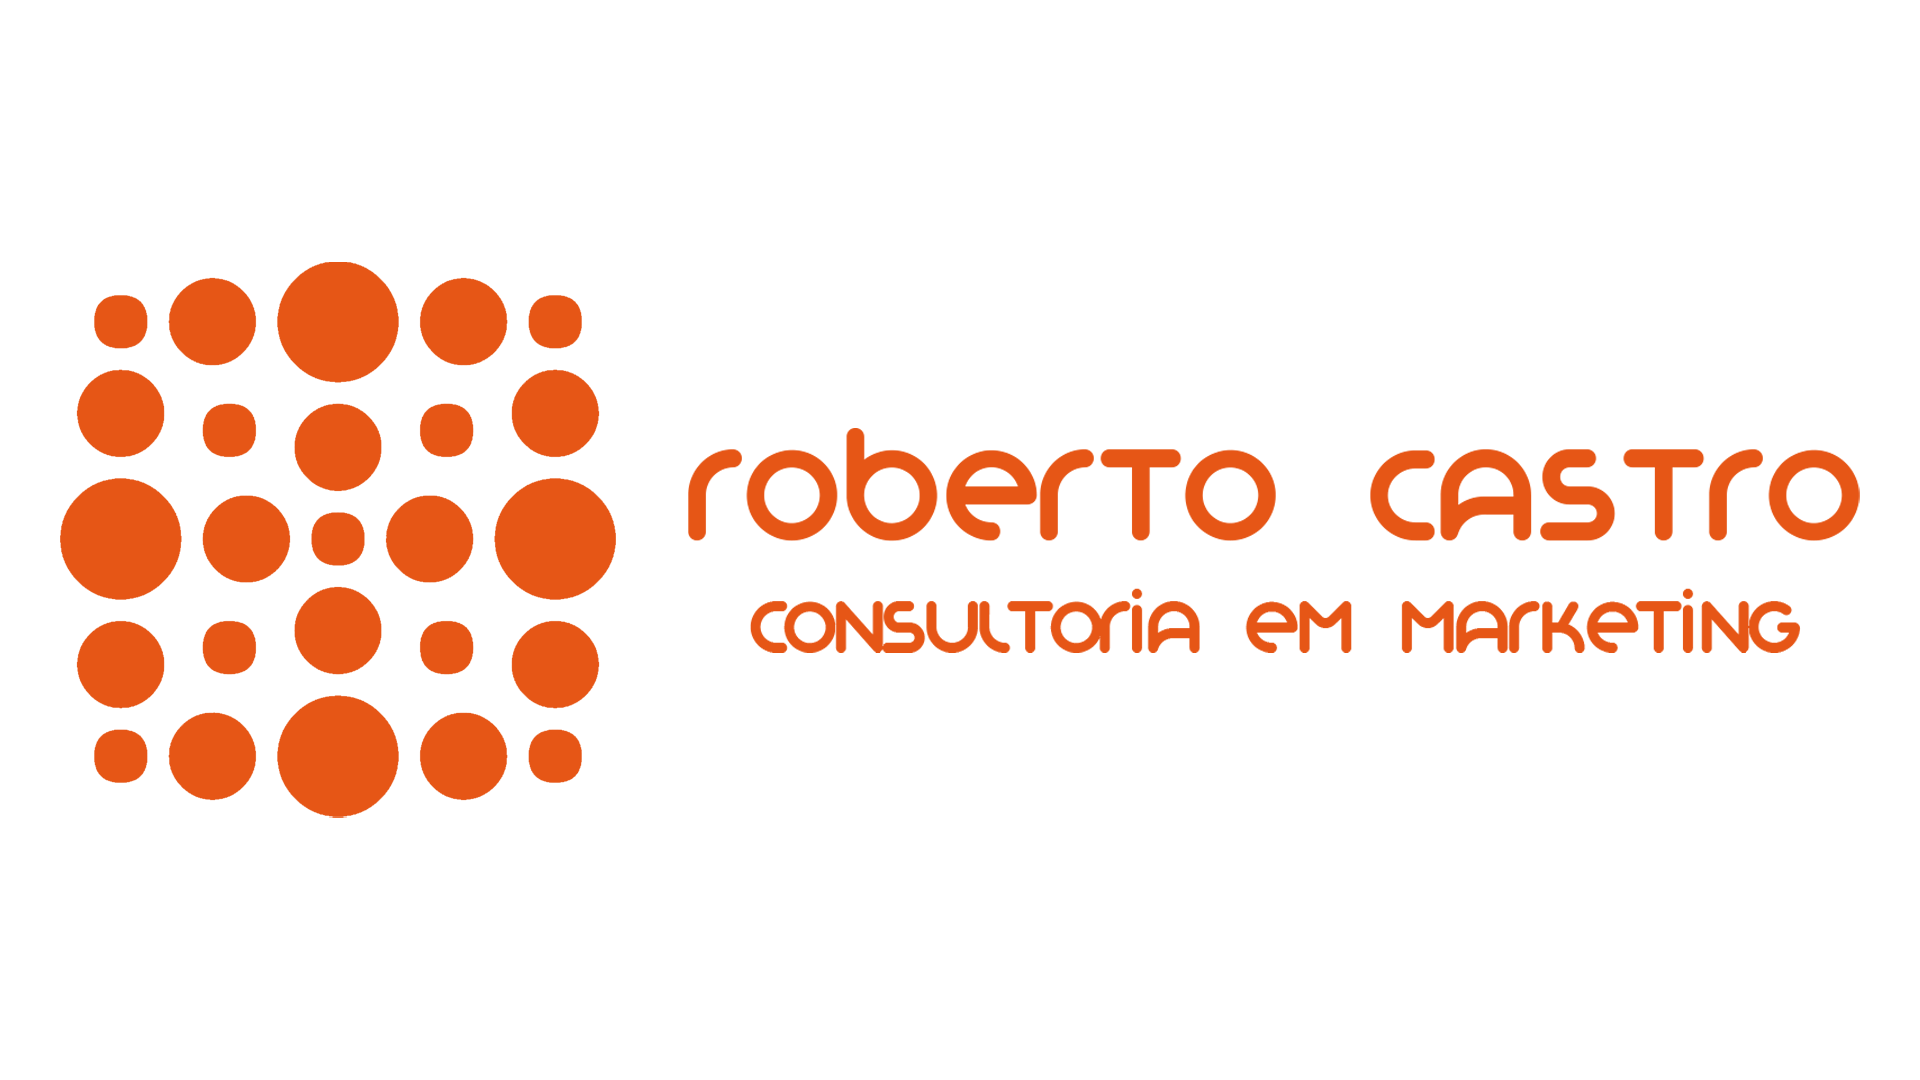 Roberto Castro